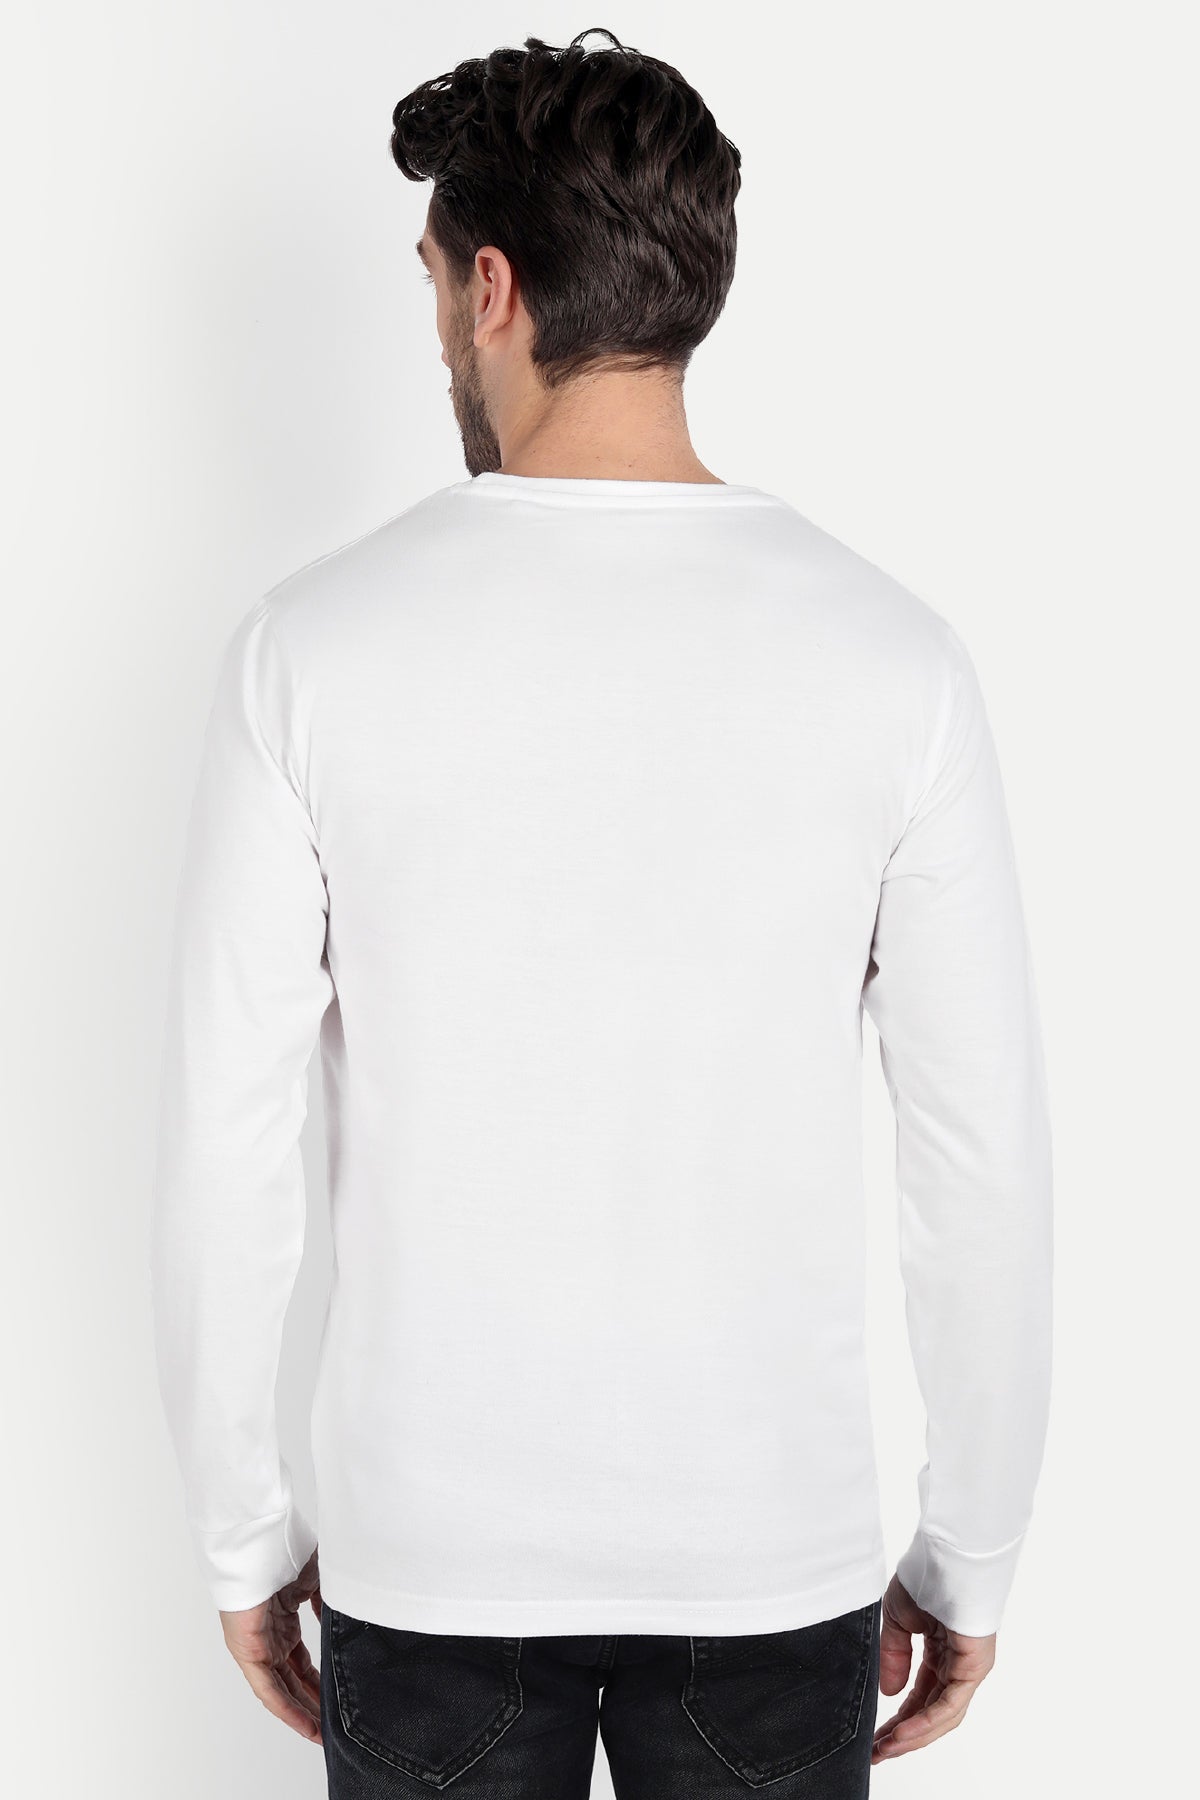 Men's Full Sleeve White T-Shirt